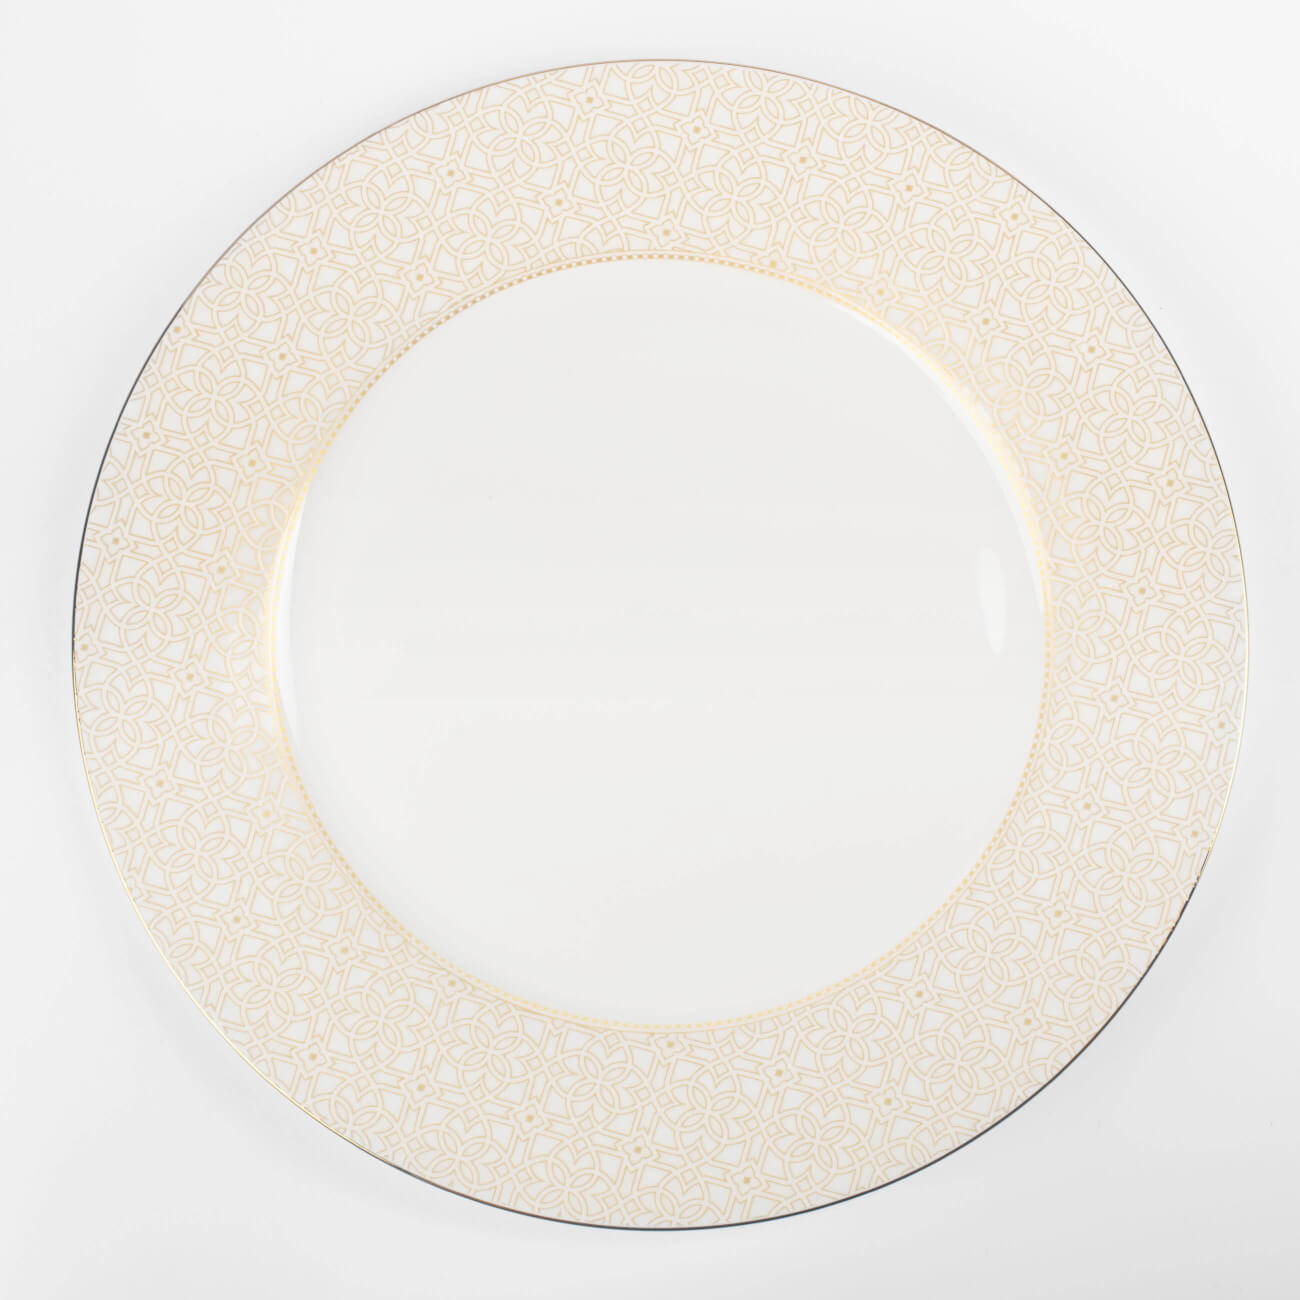 Тарелка обеденная, 27 см, фарфор F, с золотистым кантом, Орнамент, Liberty тарелка обеденная 29 см фарфор f белая bend silver